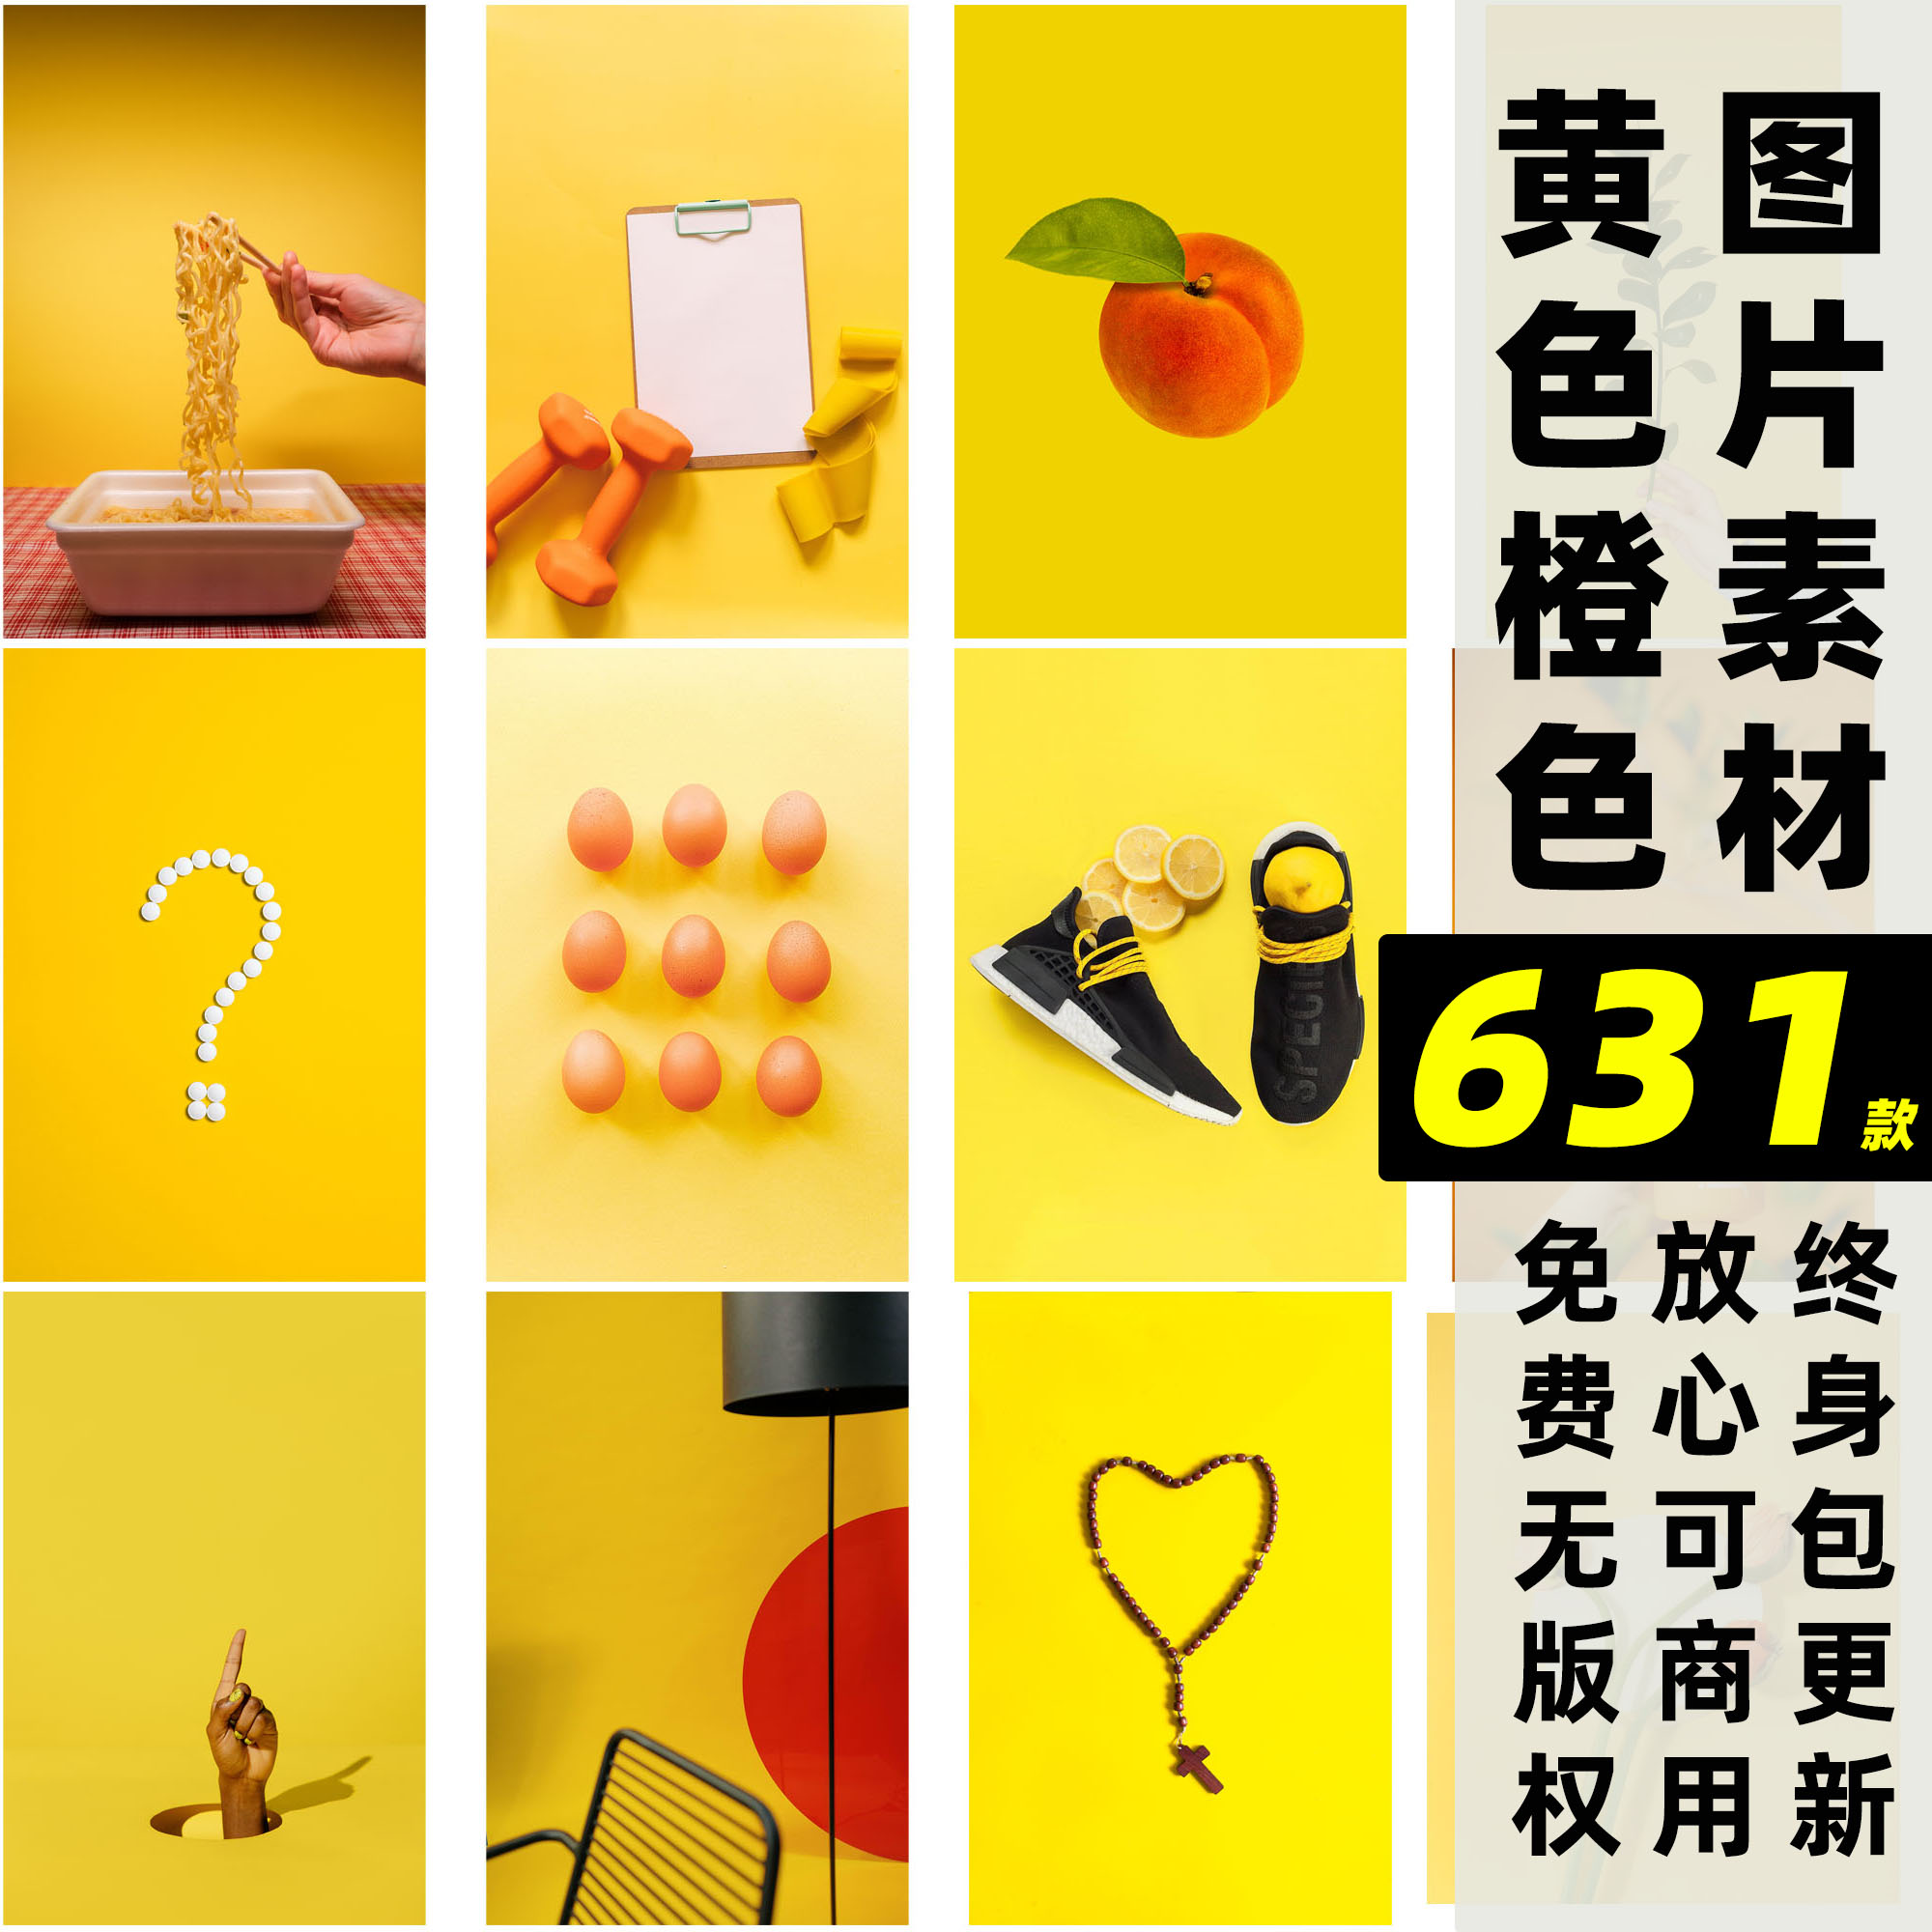 黄橙丨可商用橙色图片设计师素材国外无版权颜色分类自媒体配图片